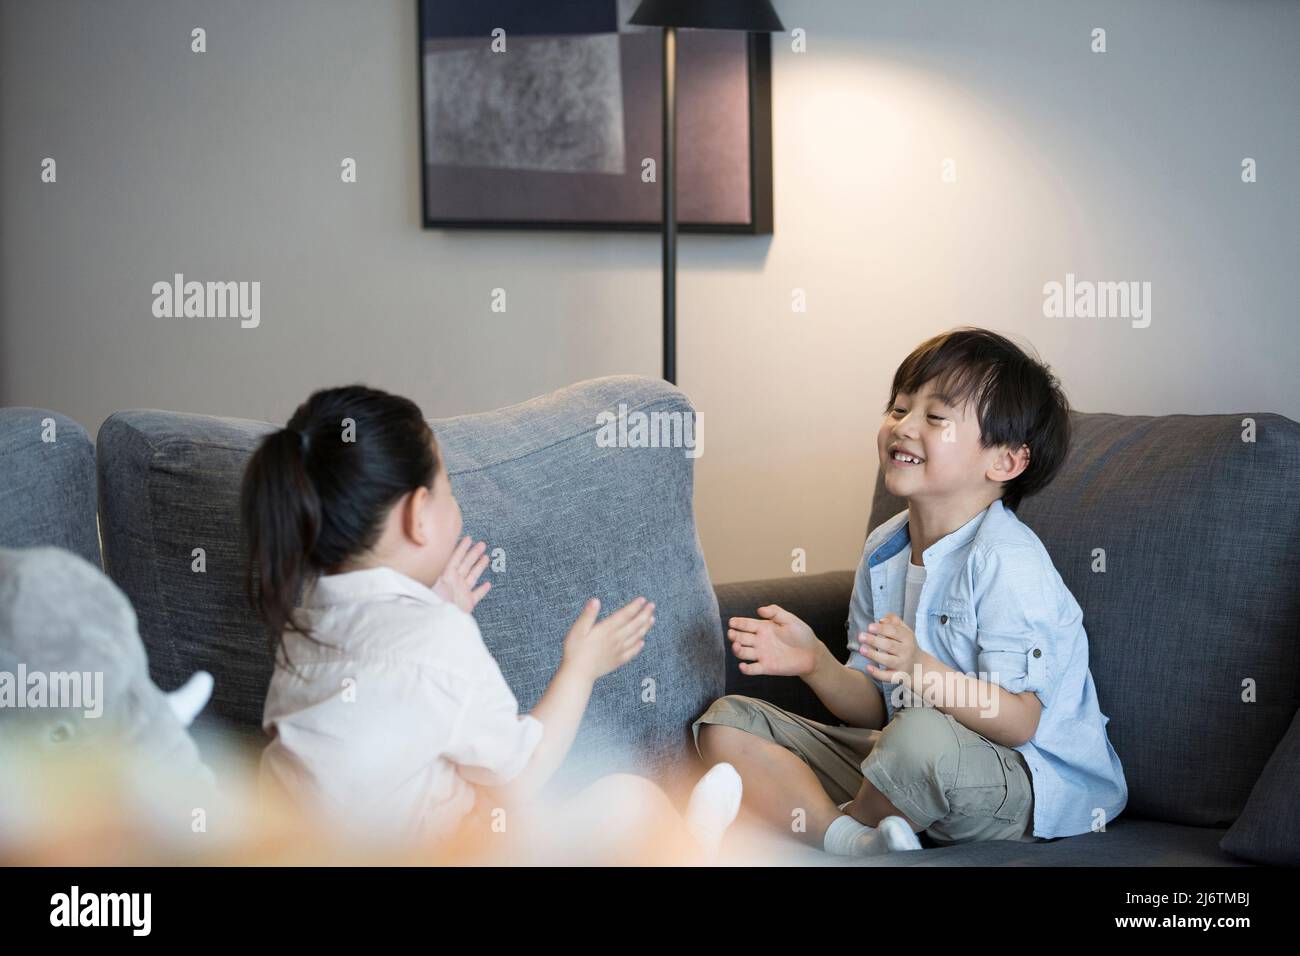 Une petite fille et un petit garçon jouent main clapping sur le canapé du salon - photo de stock Banque D'Images